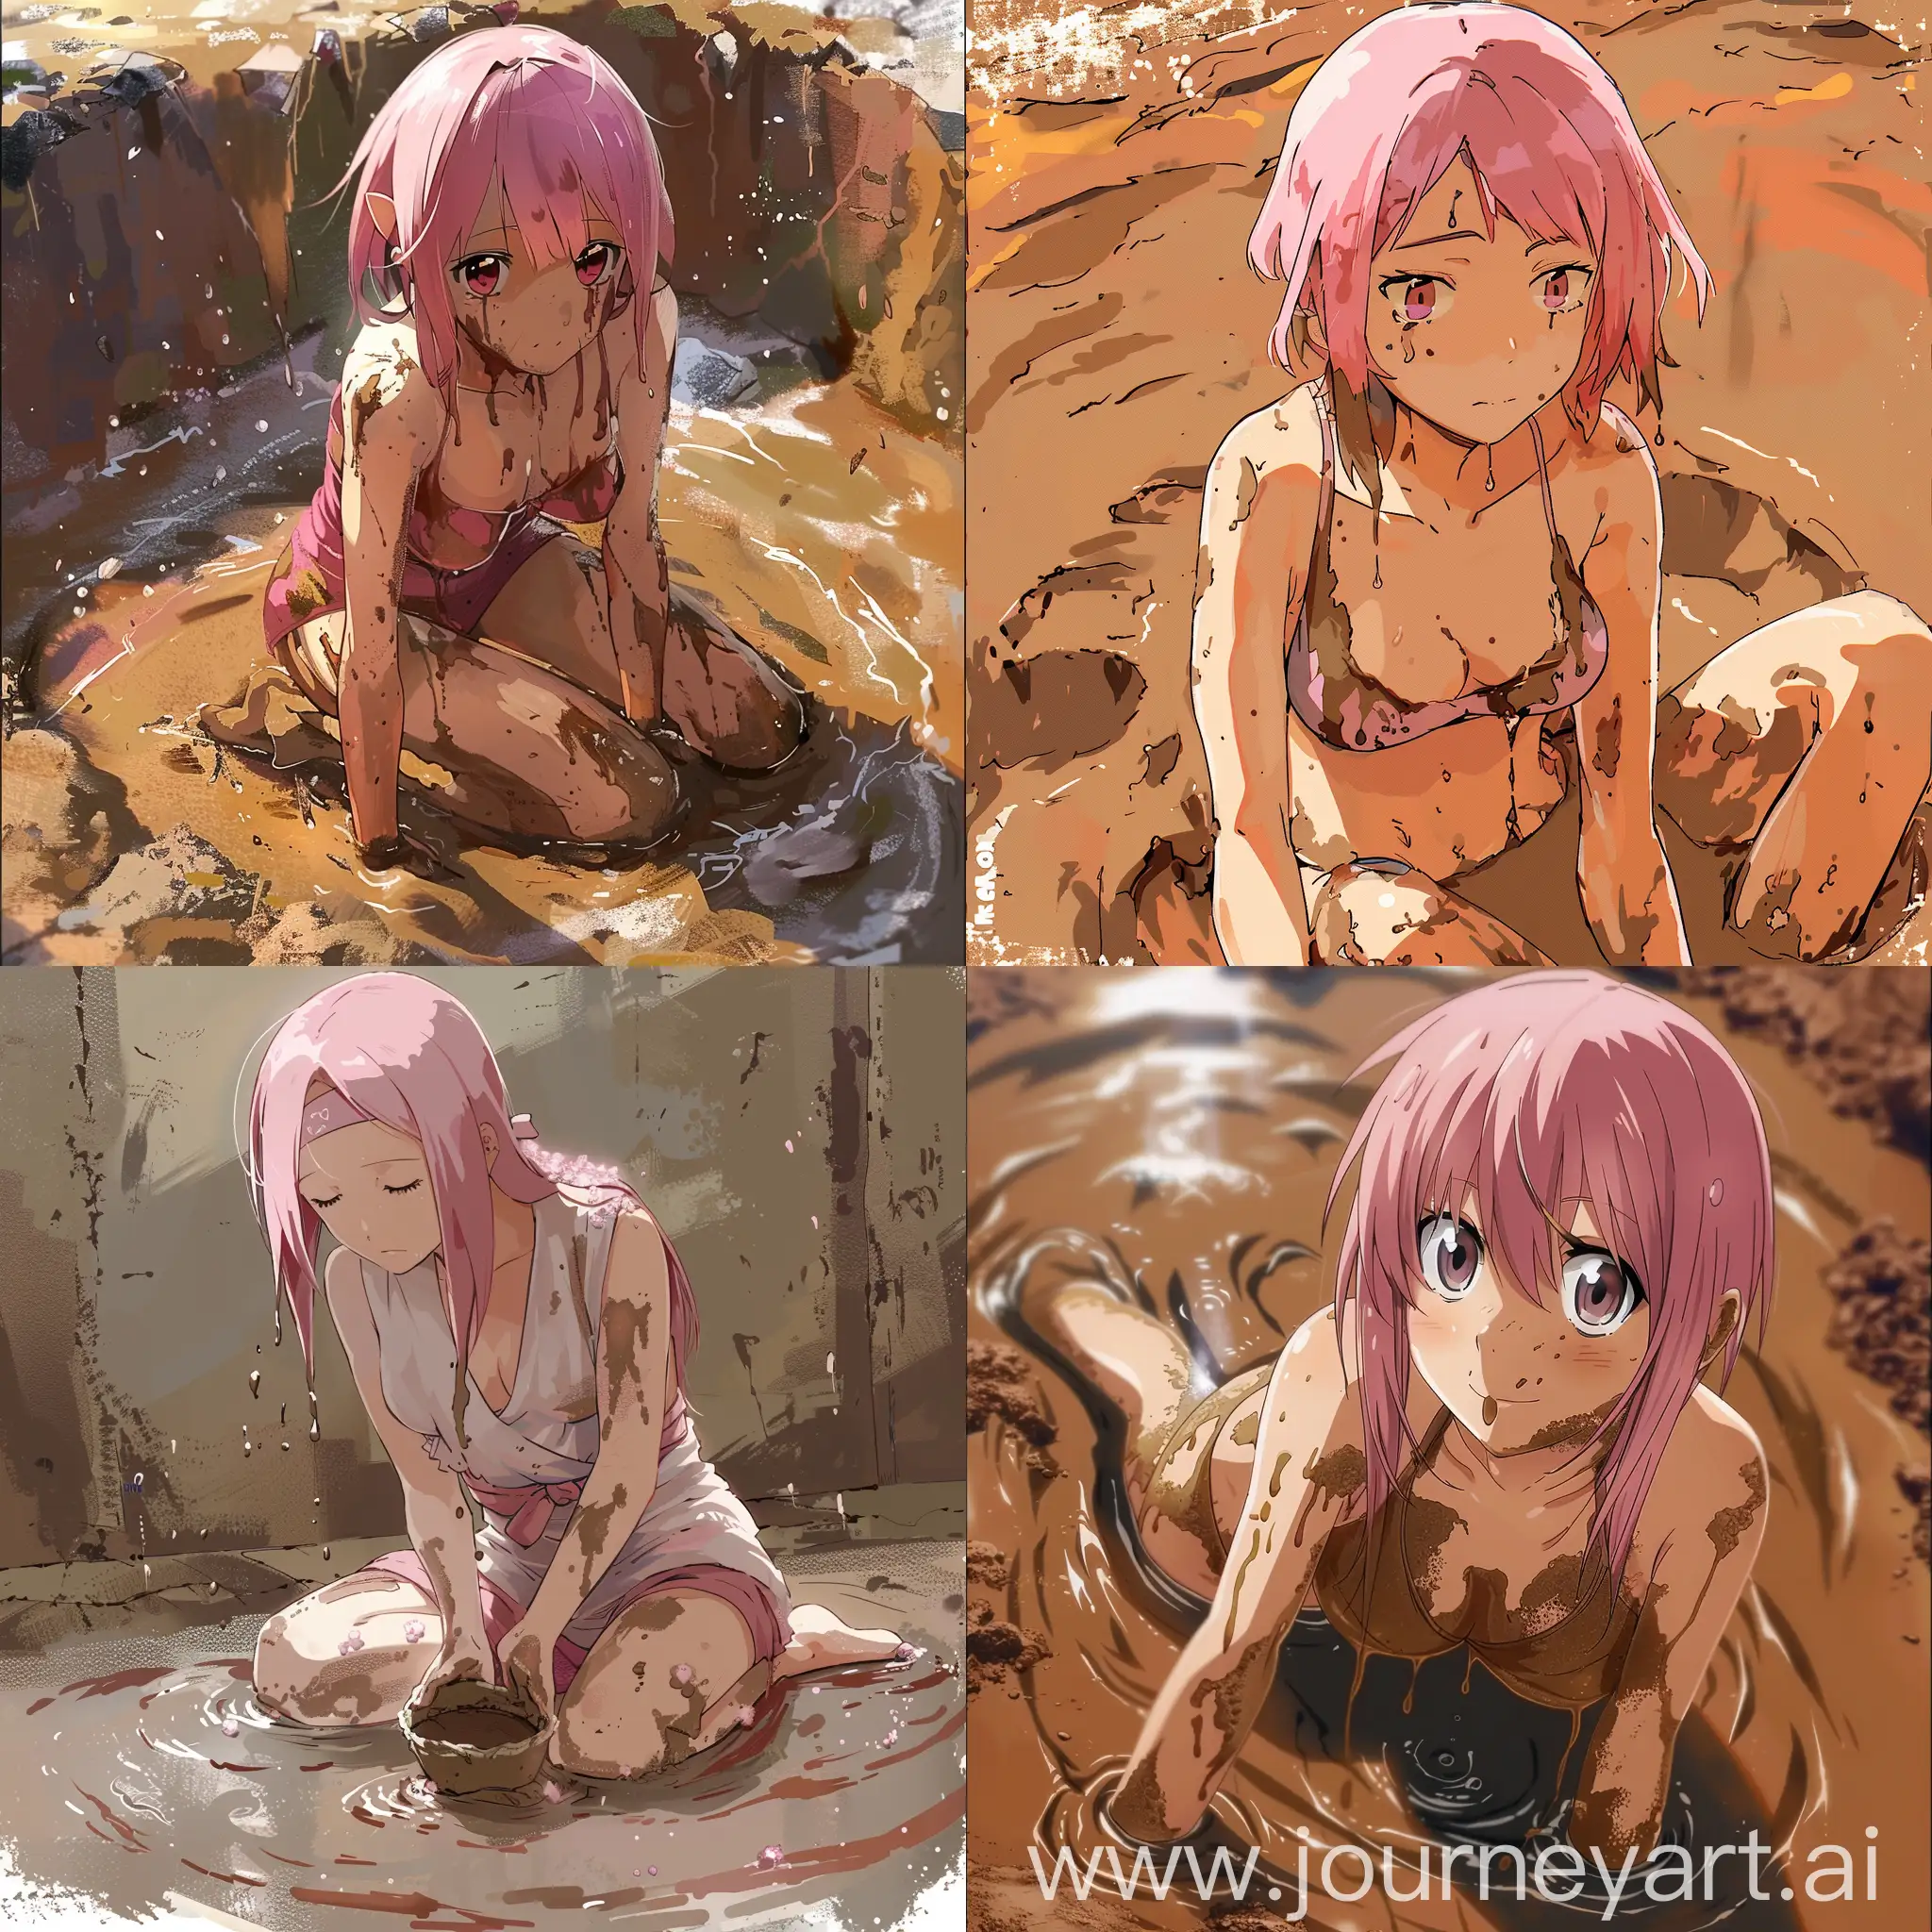 Sakura haruno bathes in mud bath